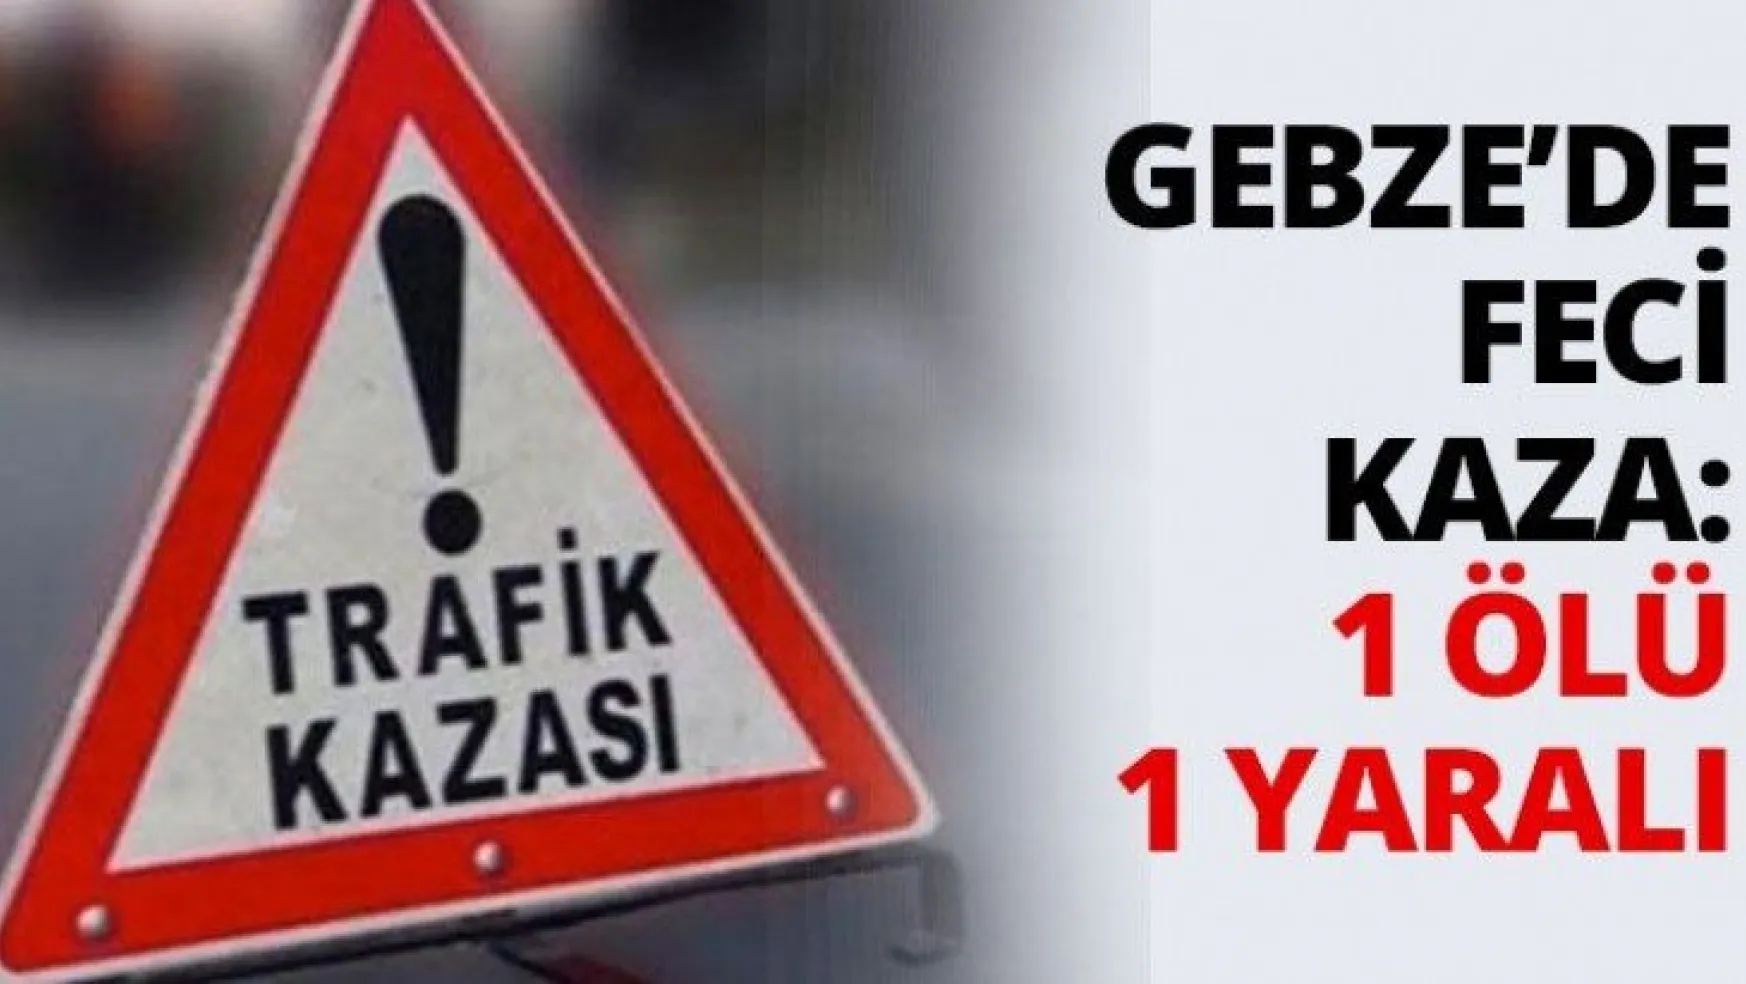 Gebze'de feci kaza: 1 ölü 1 yaralı